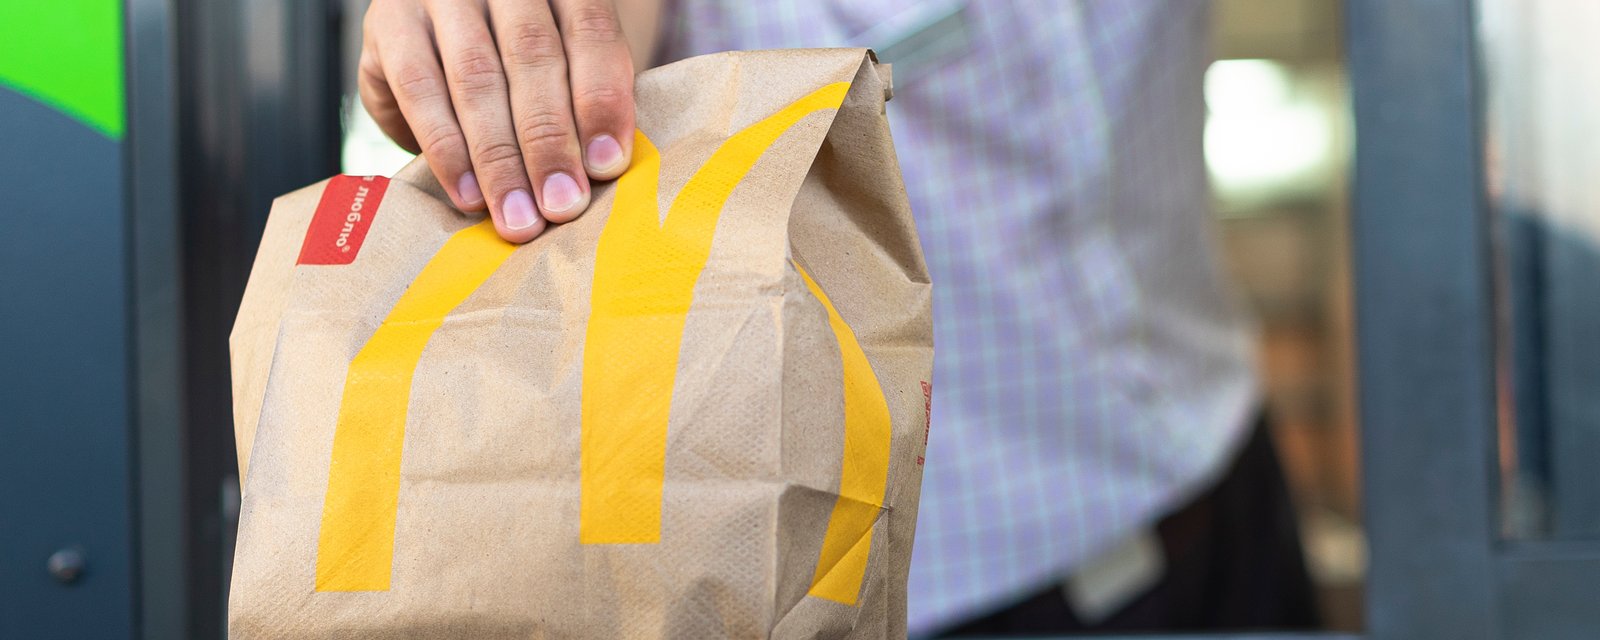 McDonald's offre des McCroquettes gratuites pour un temps limité